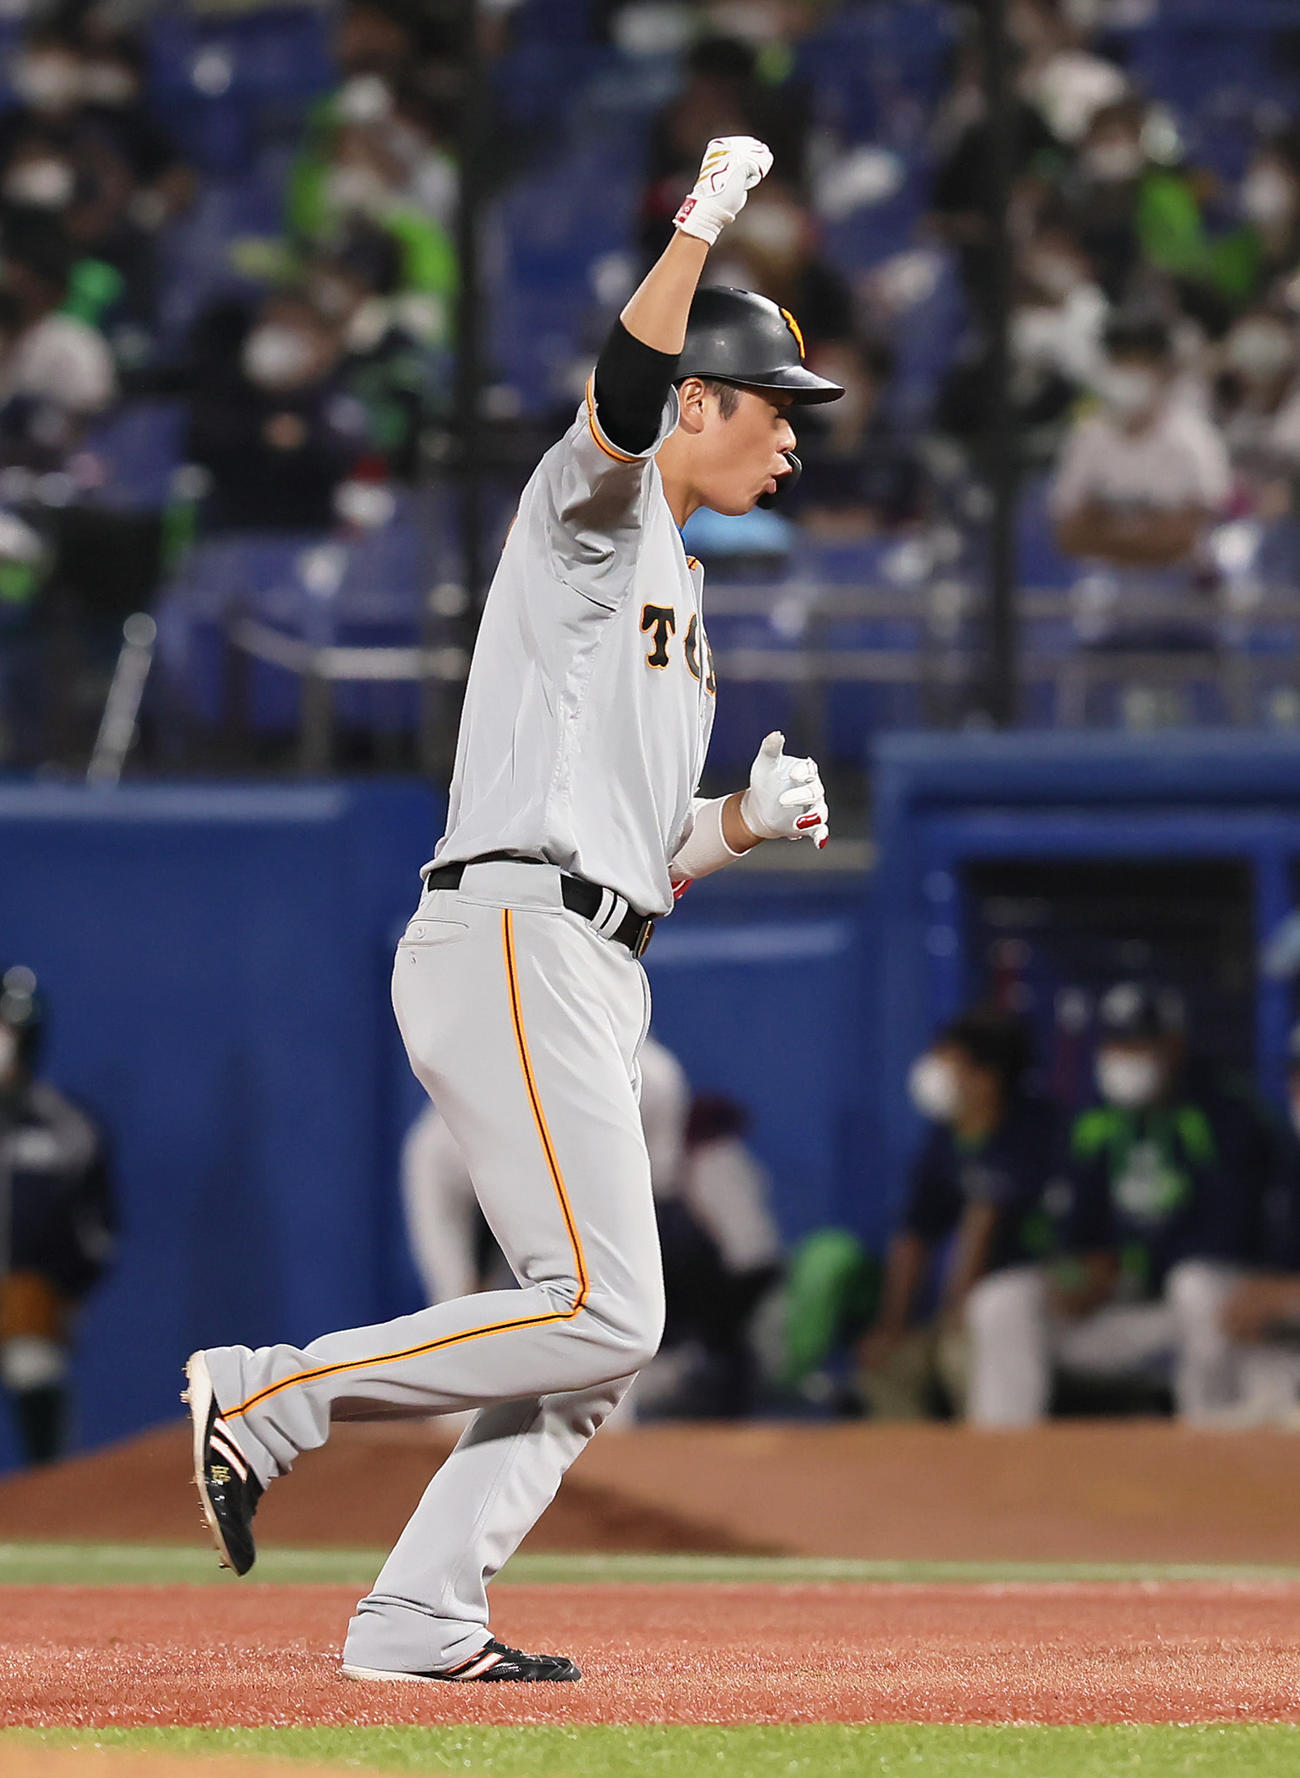 巨人28イニングぶり適時打、坂本勇人が勝ち越し打 6得点は18試合ぶり - プロ野球写真ニュース : 日刊スポーツ